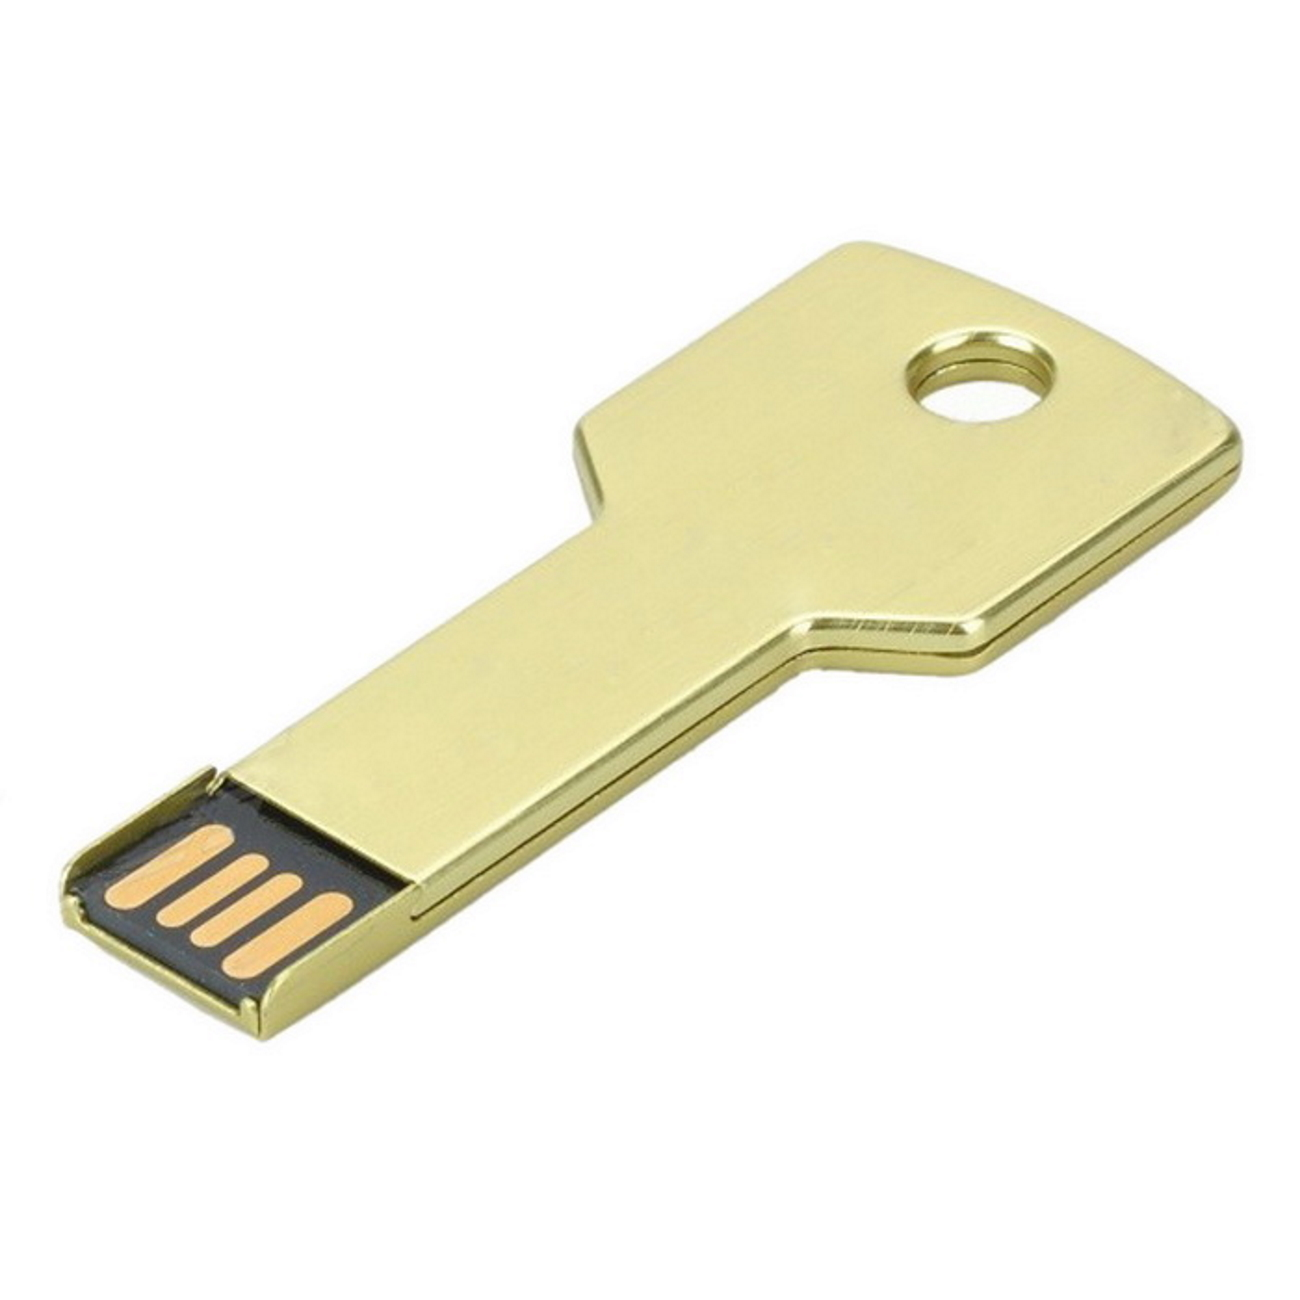 4 GB) GERMANY USB 4GB Key (Gold, USB-Stick Gold